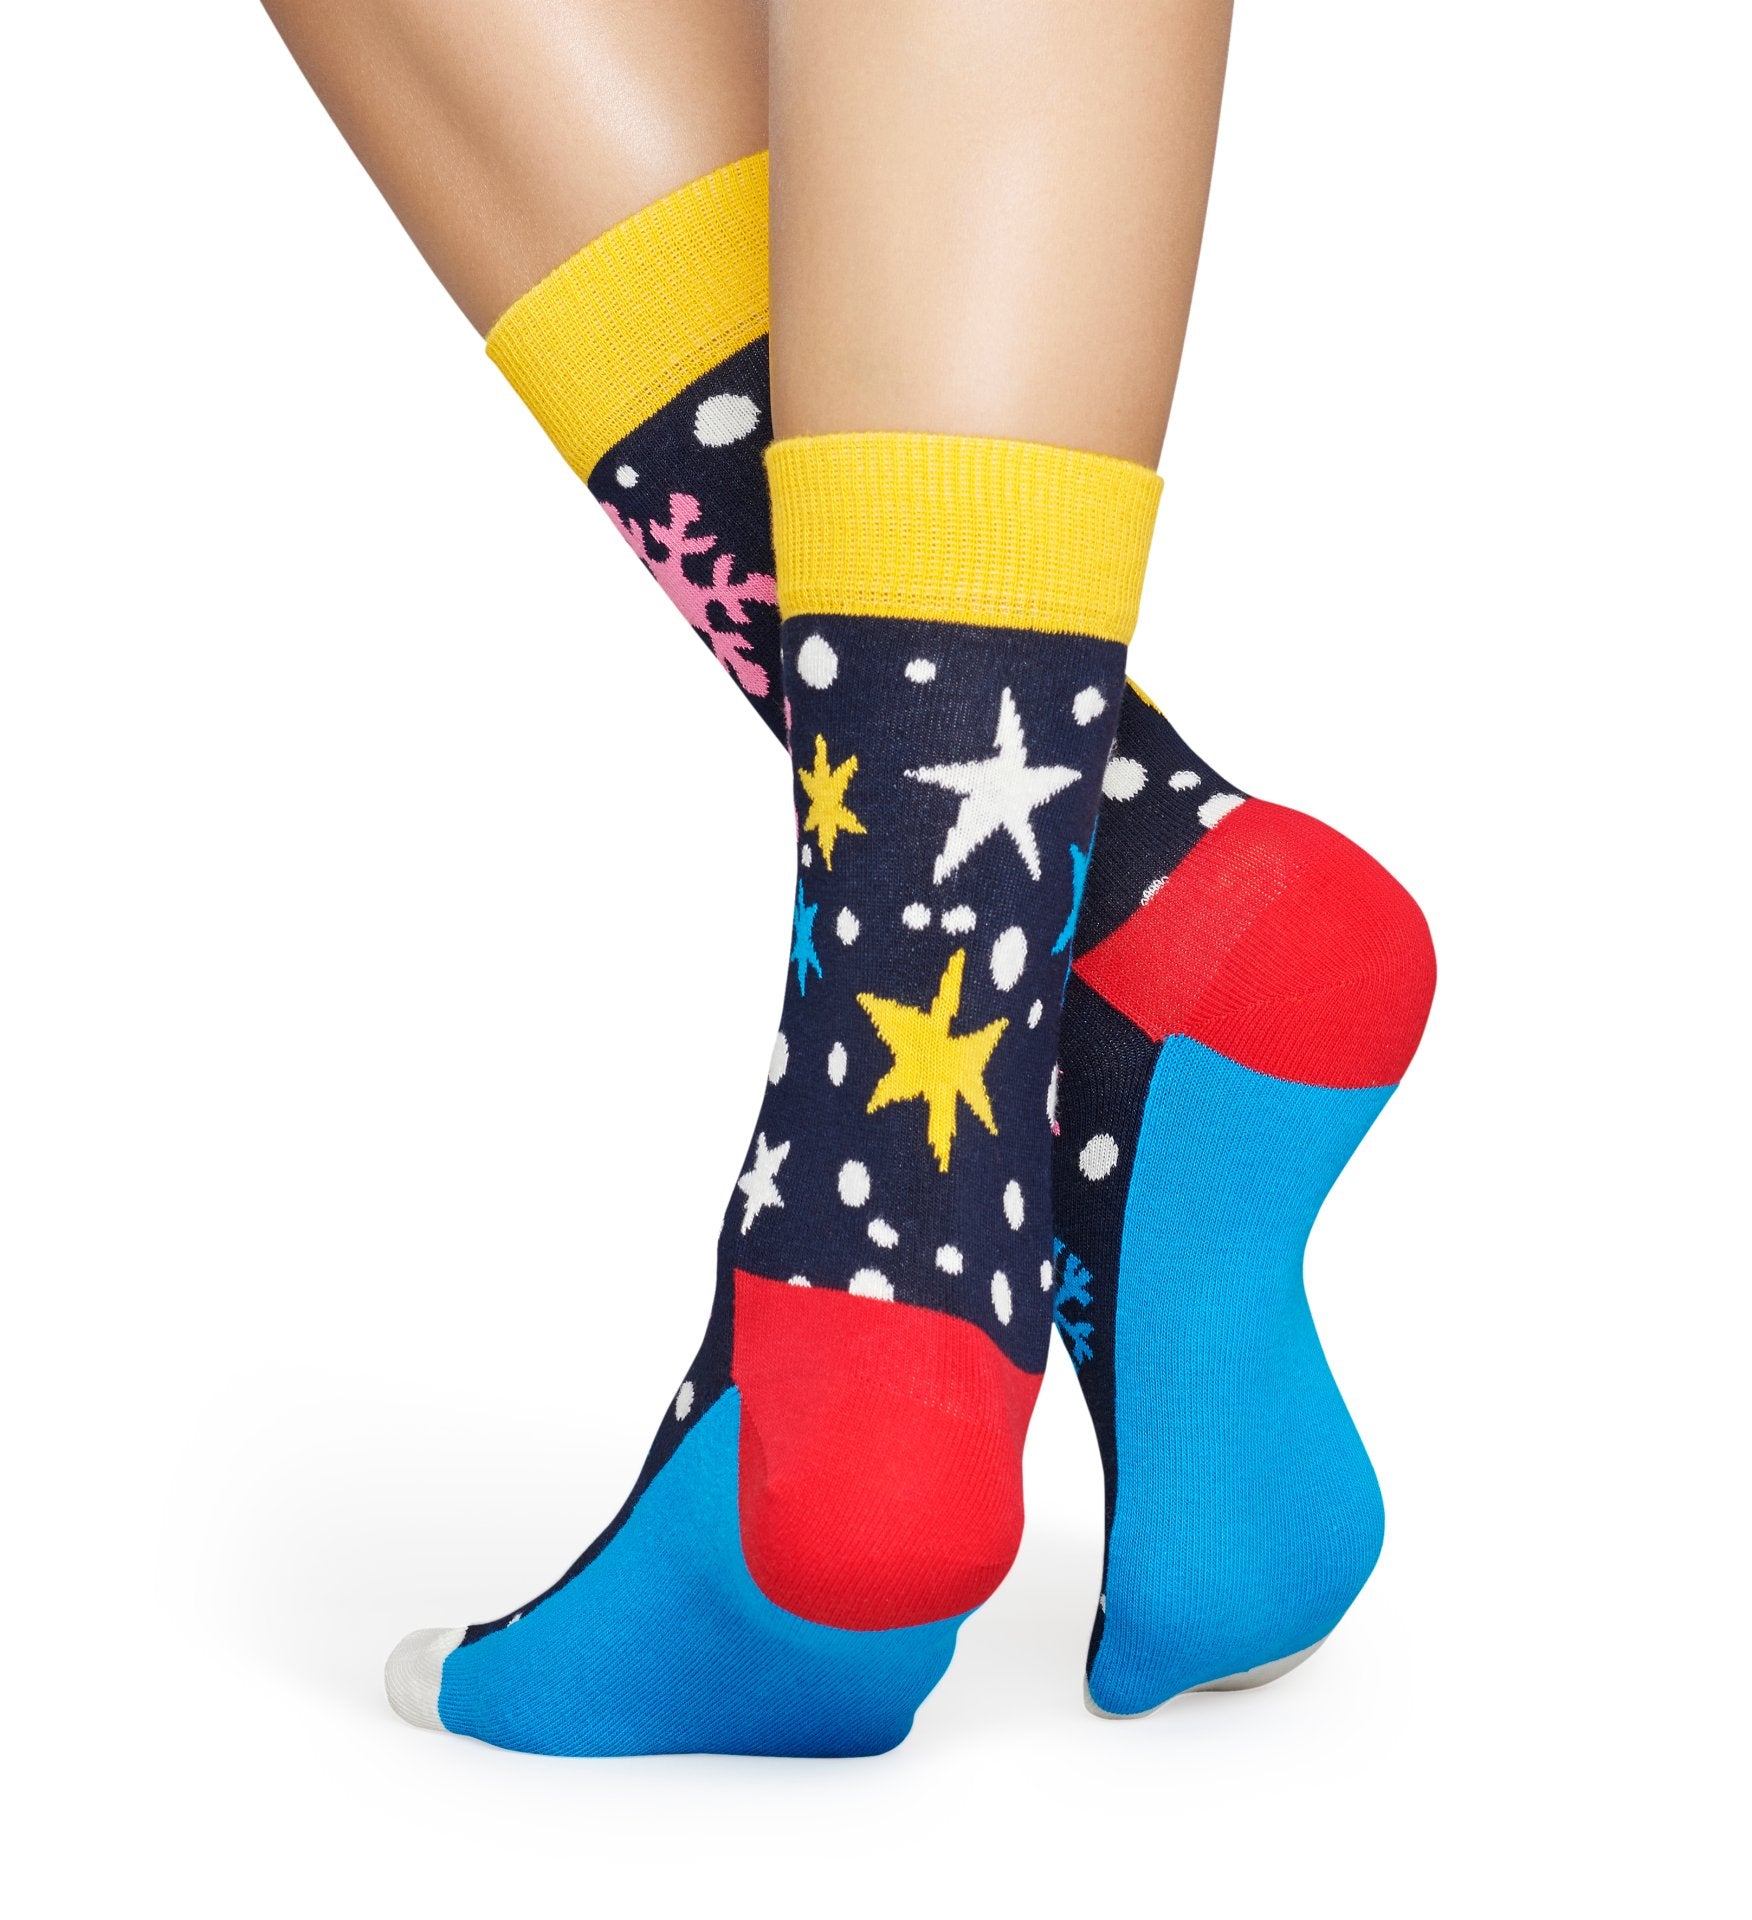 Modré ponožky Happy Socks se sněhovými vločkami a hvězdami, vzor Twinkle Twinkle